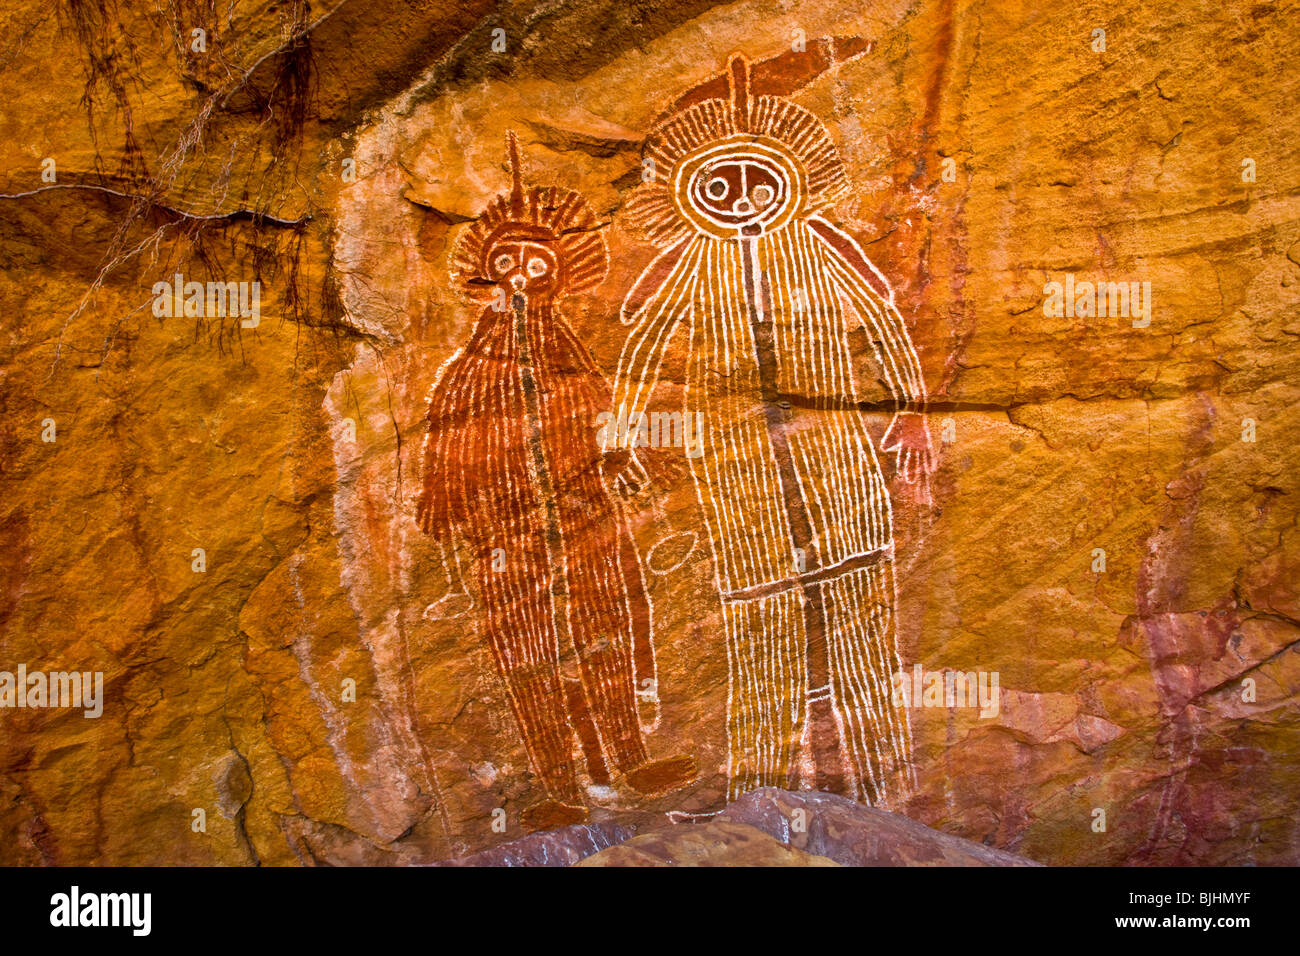 Il Fulmine fratelli, outback australiano, antichi dipinti Aborigeni, stile Hardaman, luogo segreto per proteggere l'arte Foto Stock